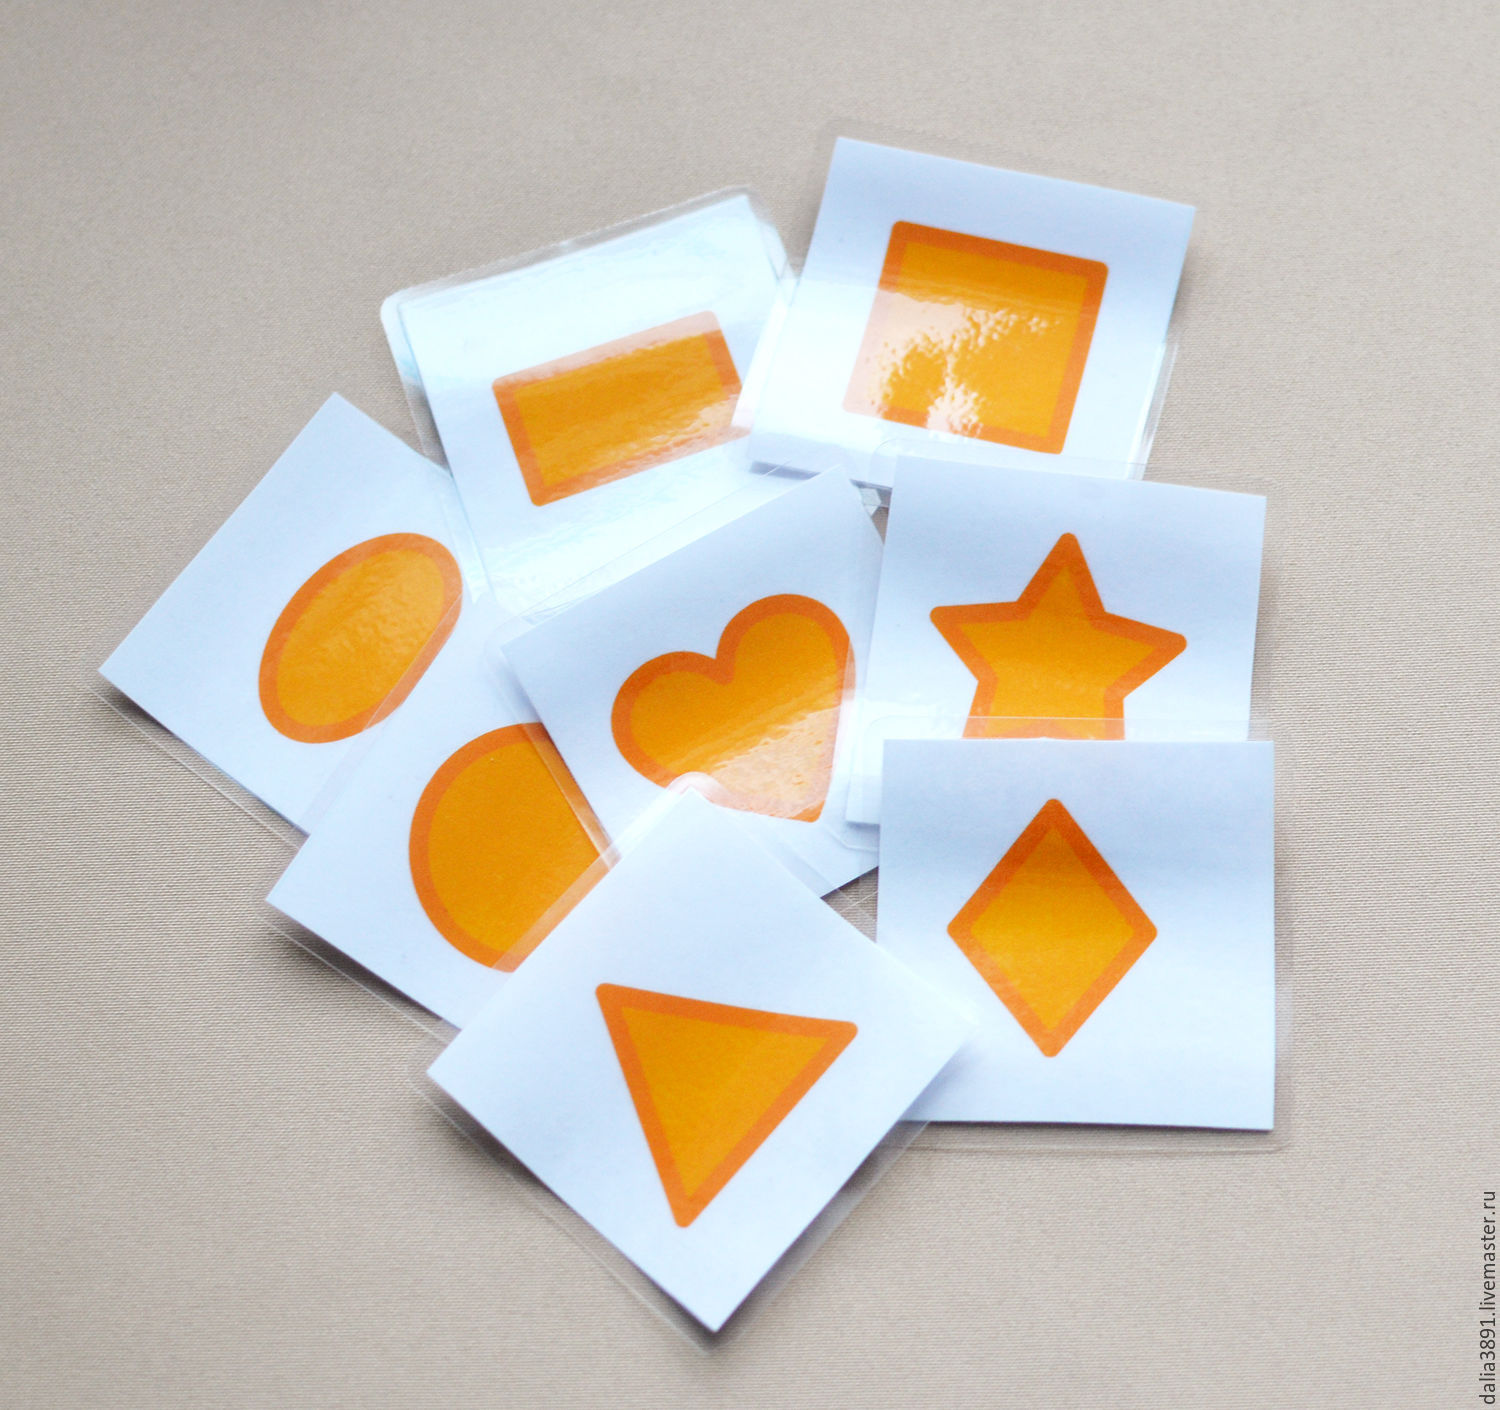 Ламинированные карточки. Заламинировать карточки. Изготовление ламинированных карточек. Сделать ламинированную карточку.